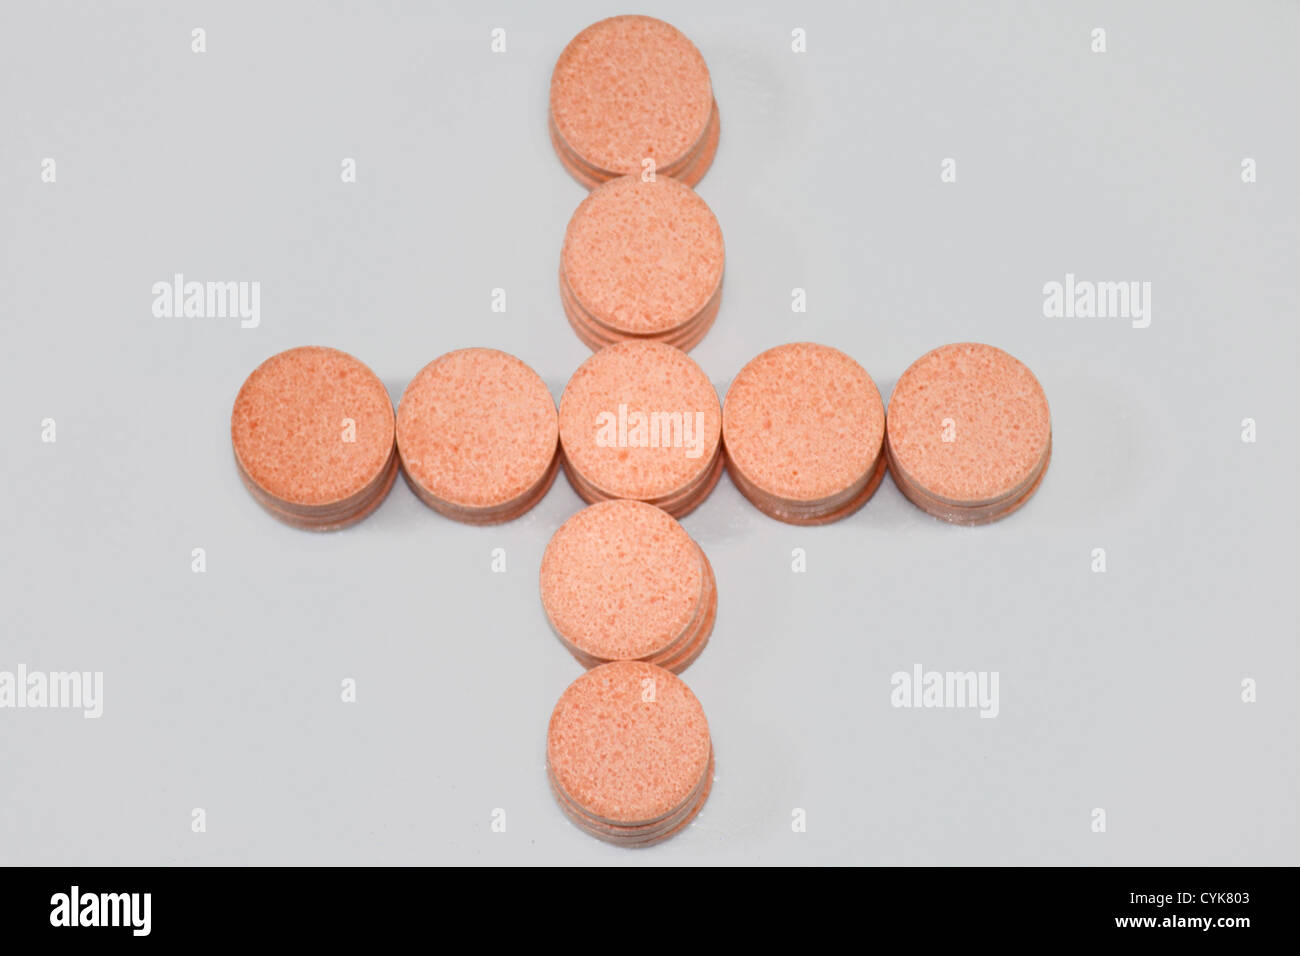 Pills dispuestos en forma de cruz, close-up Foto de stock